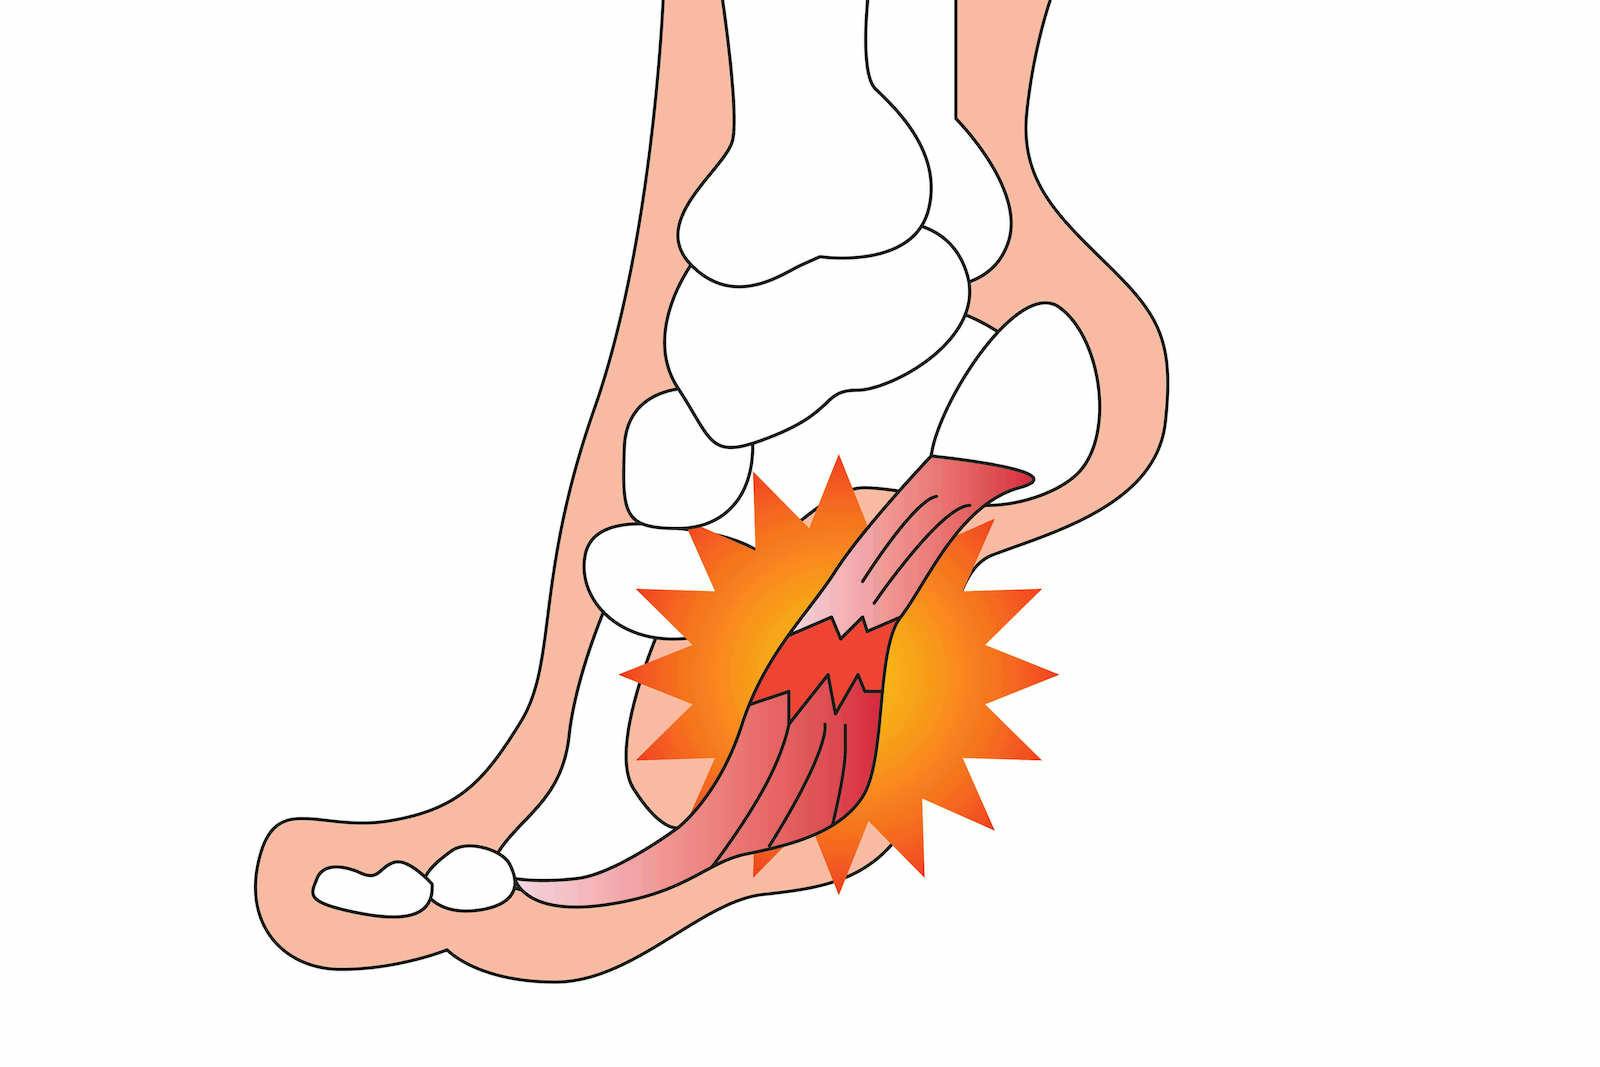 足底筋膜炎とは。チェック方法、原因、治し方、改善トレーニングを紹介